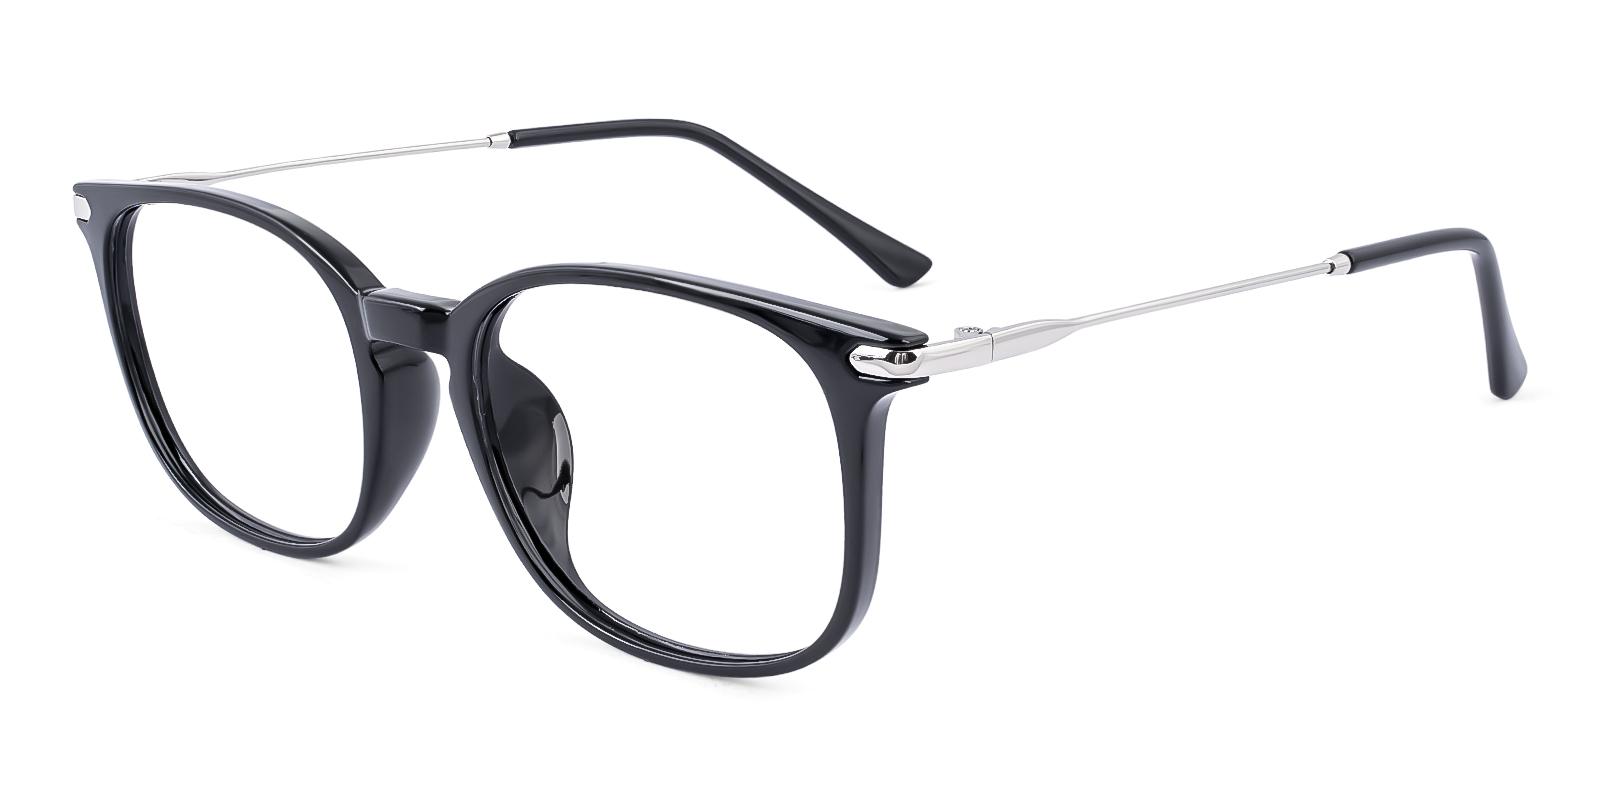 Dosast Black Plastic Eyeglasses , UniversalBridgeFit Frames from ABBE Glasses